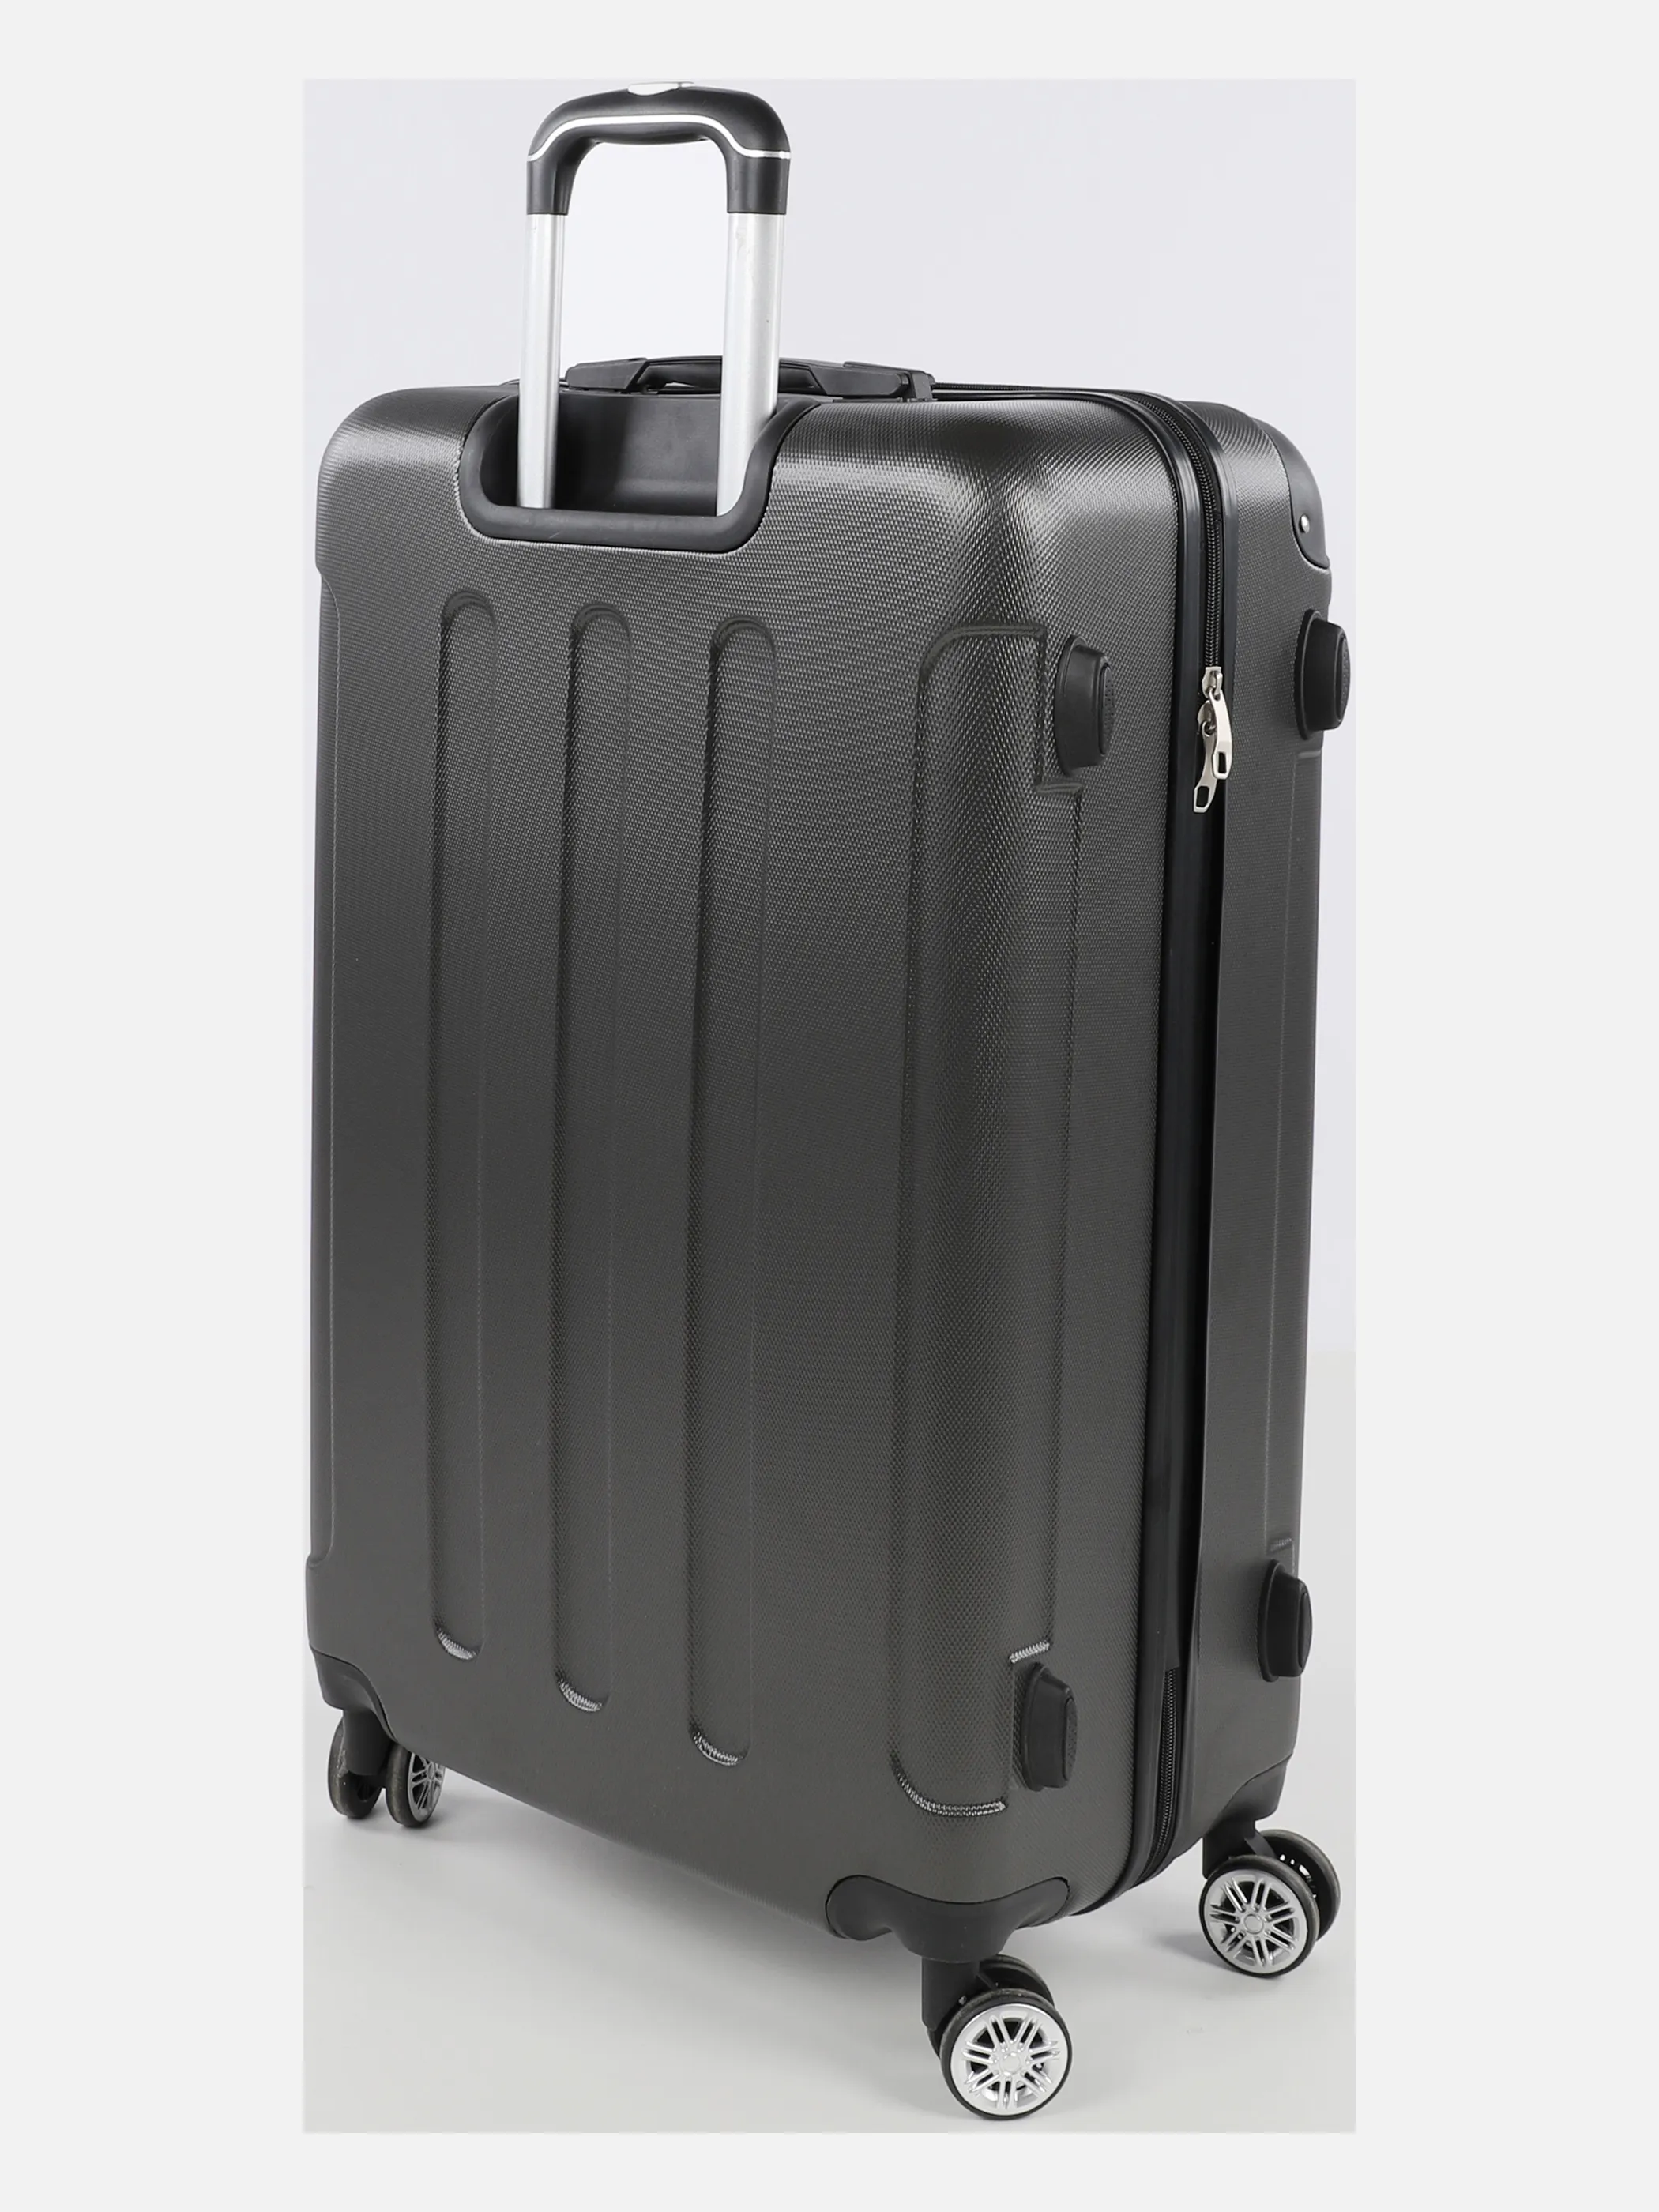 Koffer/Taschen Koffer Avalon M 67x44x26 Grau 884545 ANTHRA 2